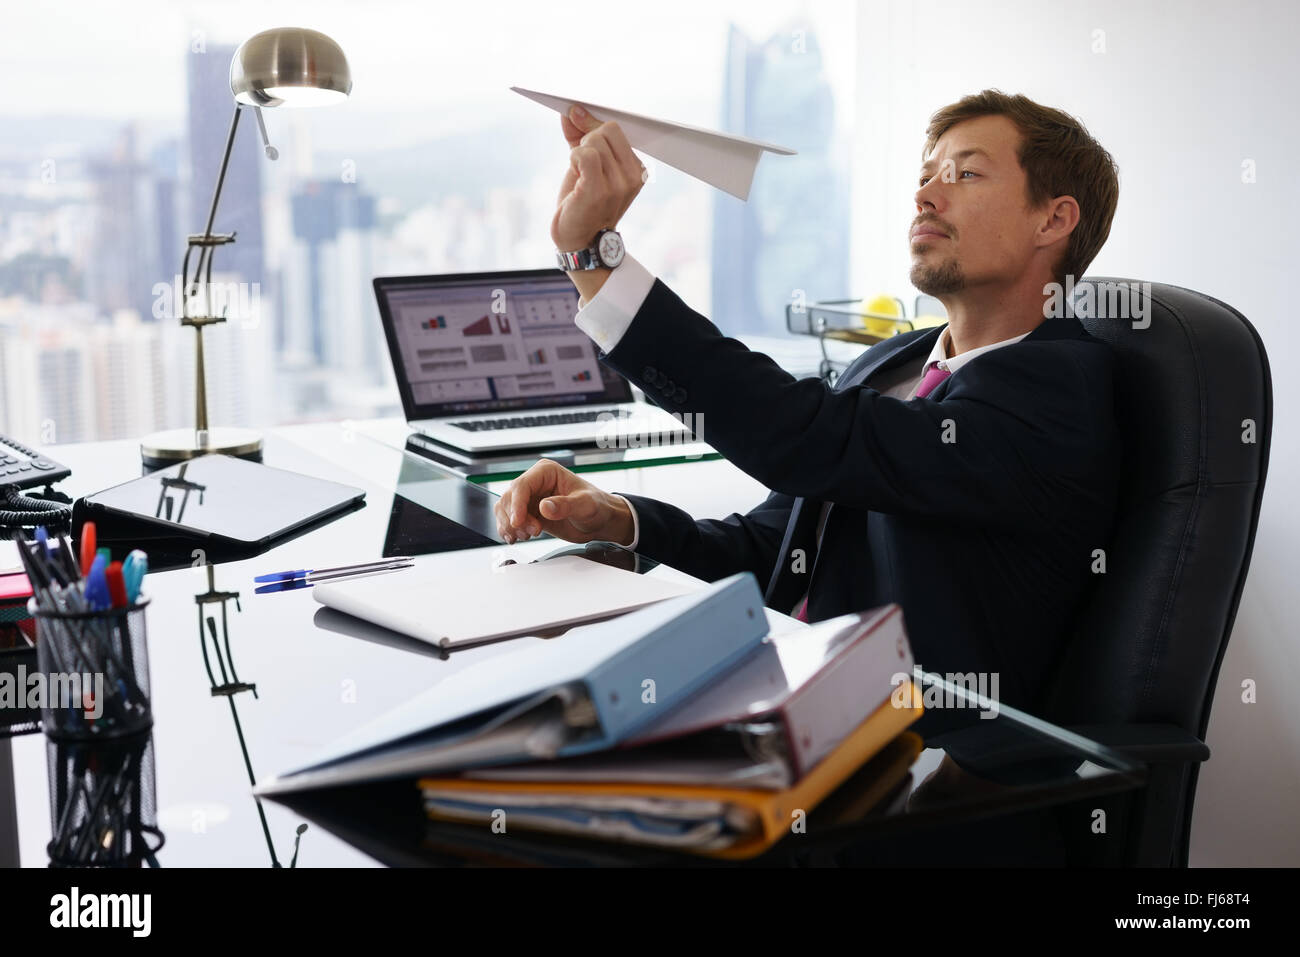 Gestionnaire d'entreprise dans un bureau moderne prend une pause et prépare un avion en papier. L'homme s'ennuie rêve de ses prochaines vacances Banque D'Images